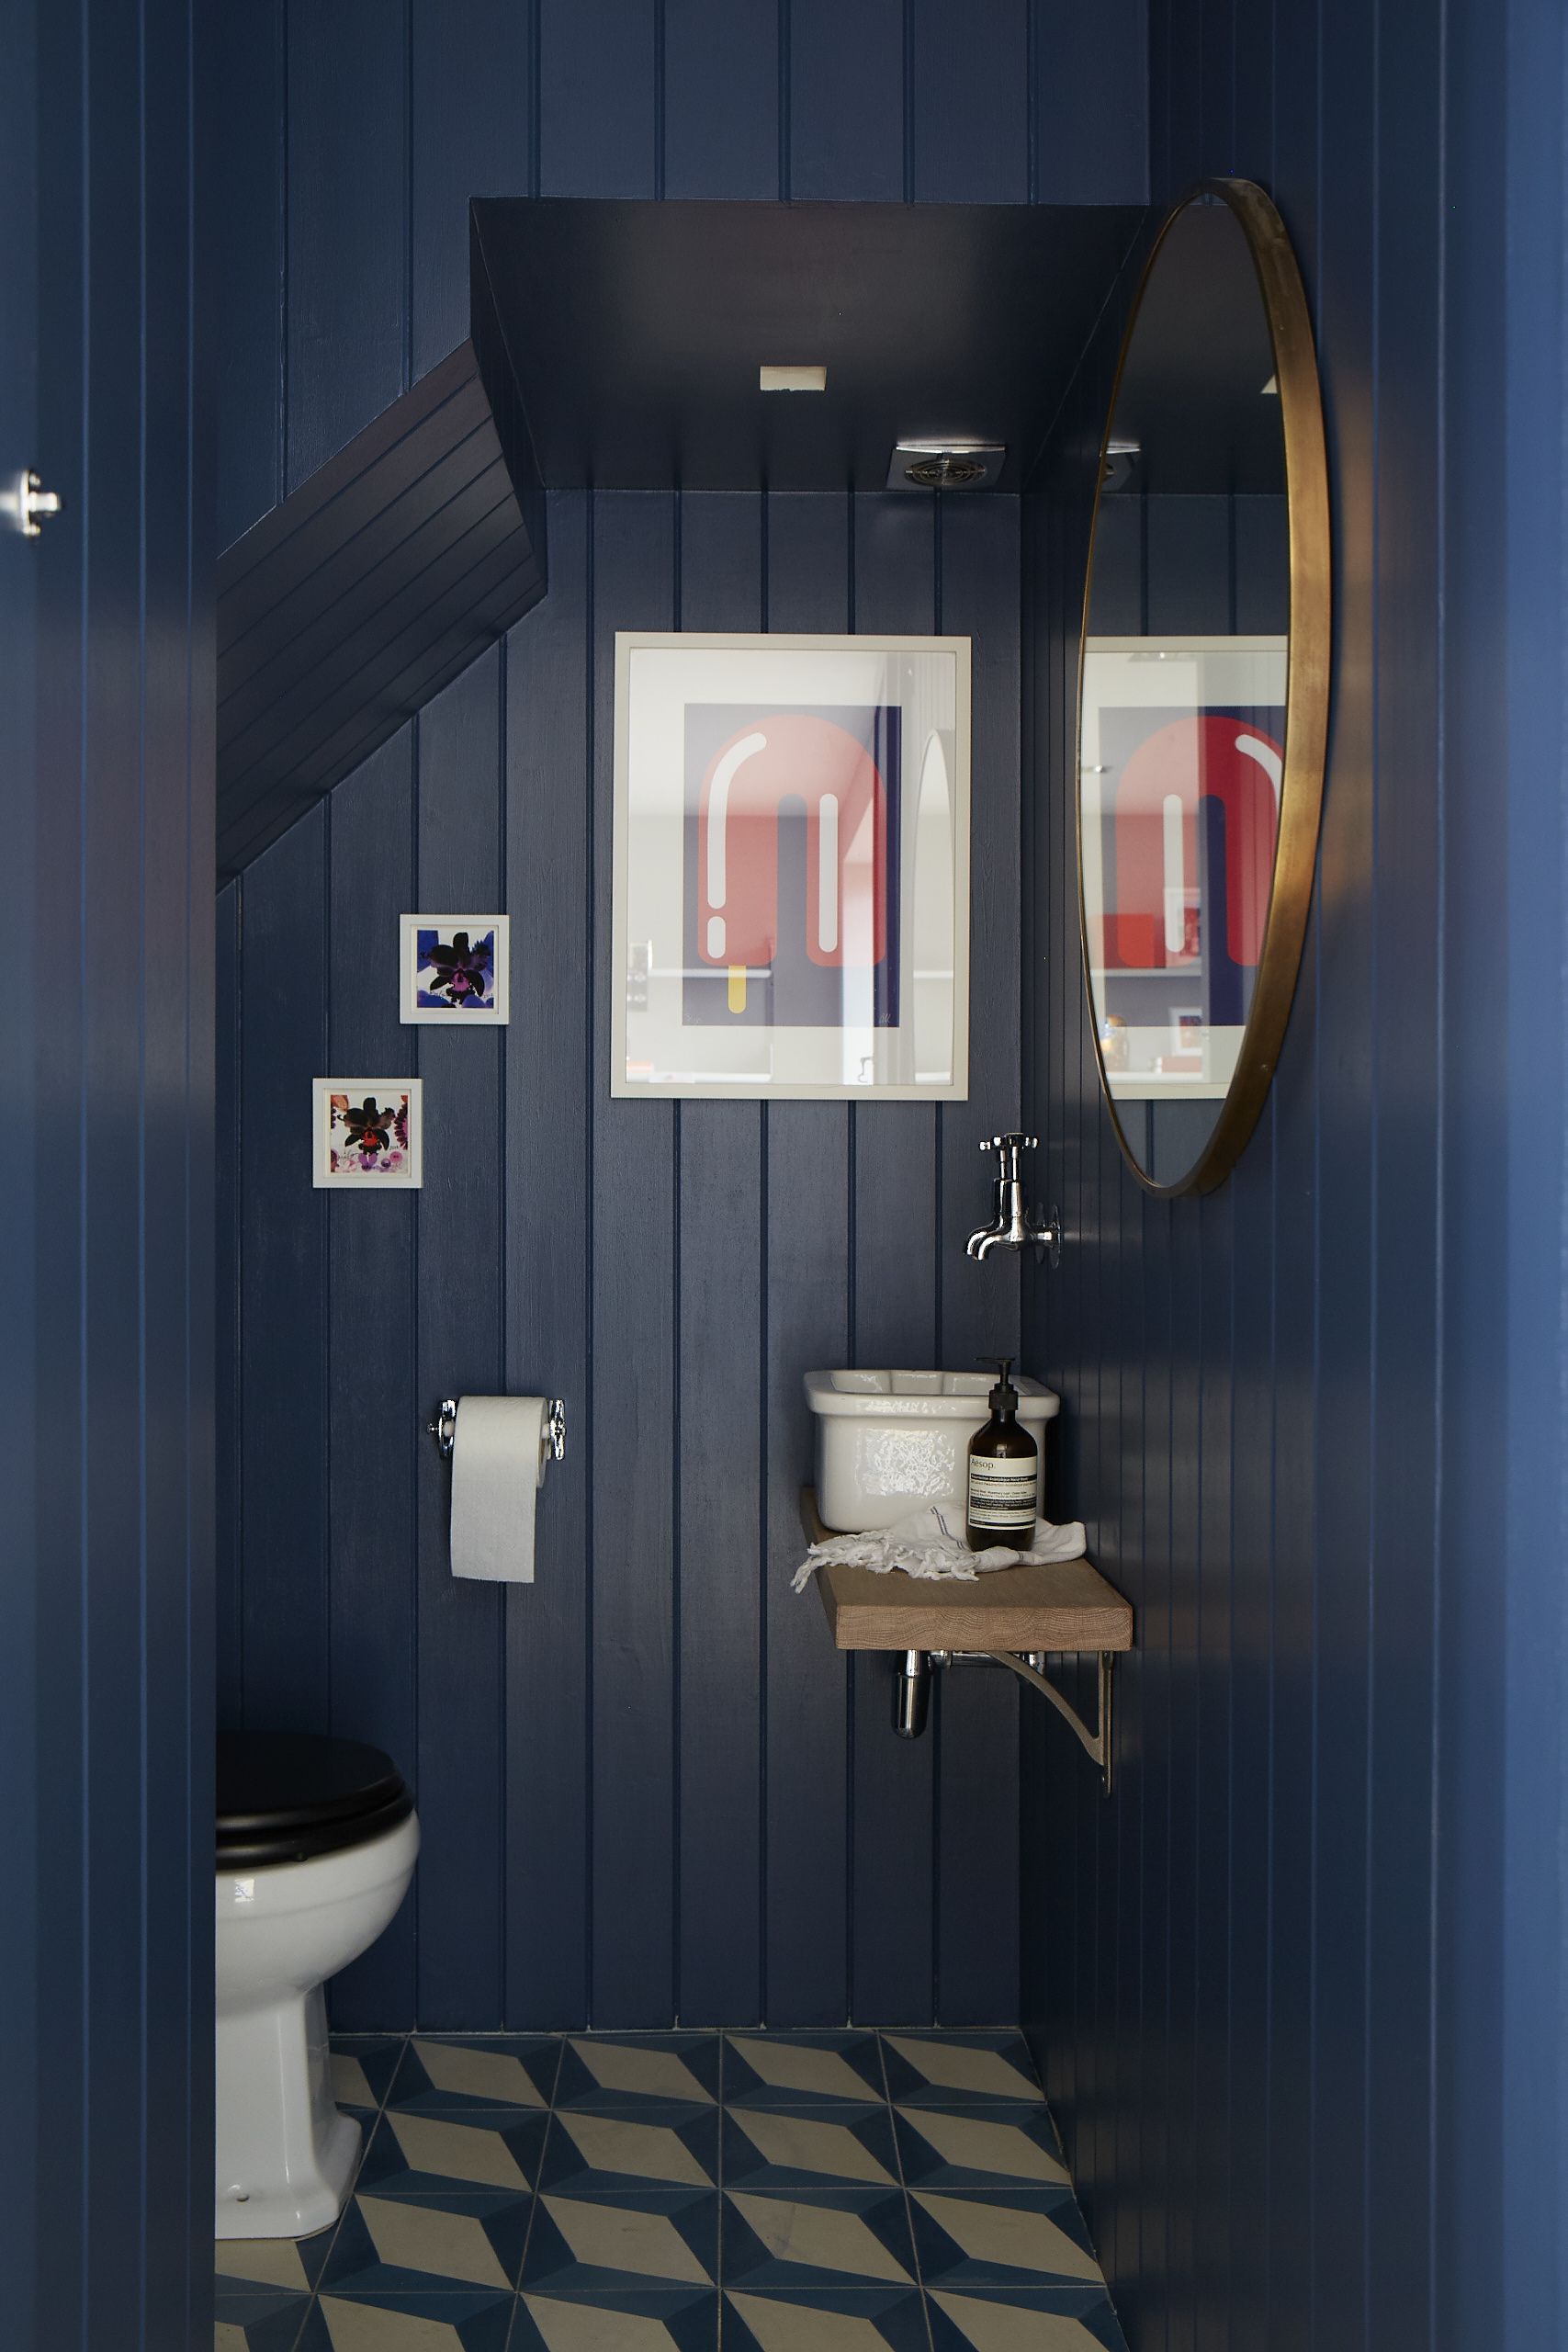 Blauw toilet  Toilet kleuren, Blauwe verf kleuren, Toilet decoratie